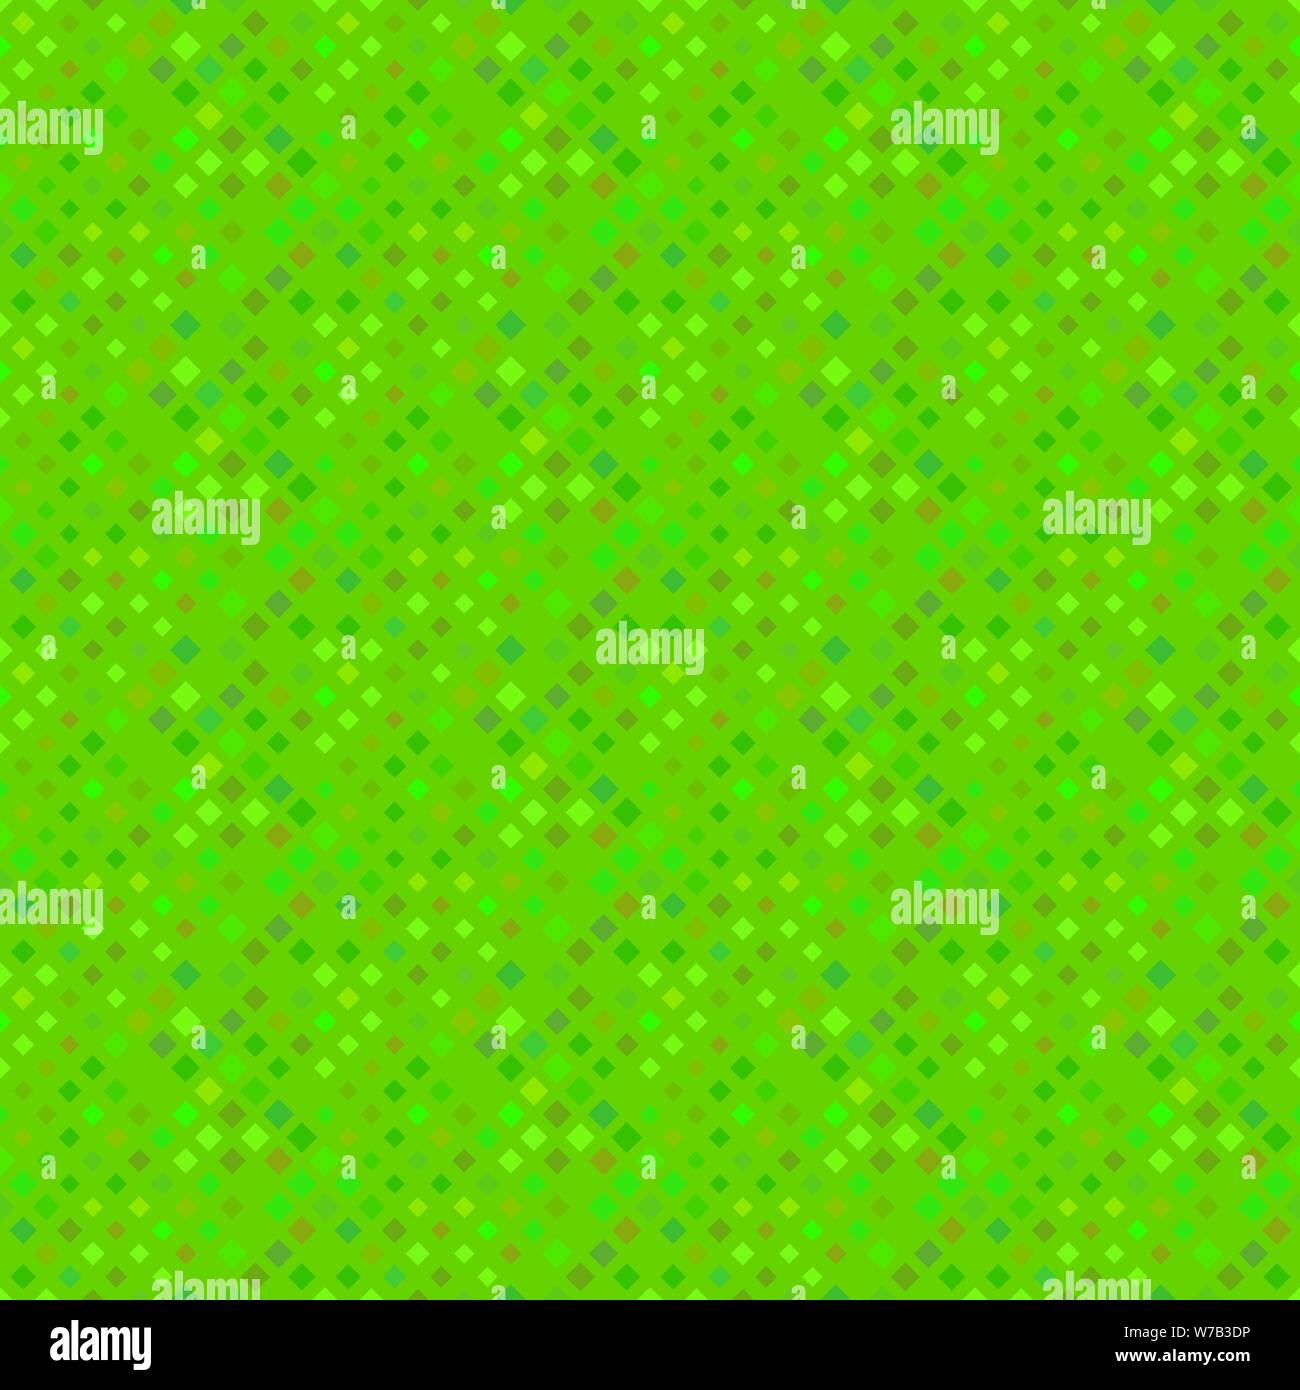 Abstract diagonale perfetta square pattern design sfondo verde - Grafica vettoriale Illustrazione Vettoriale